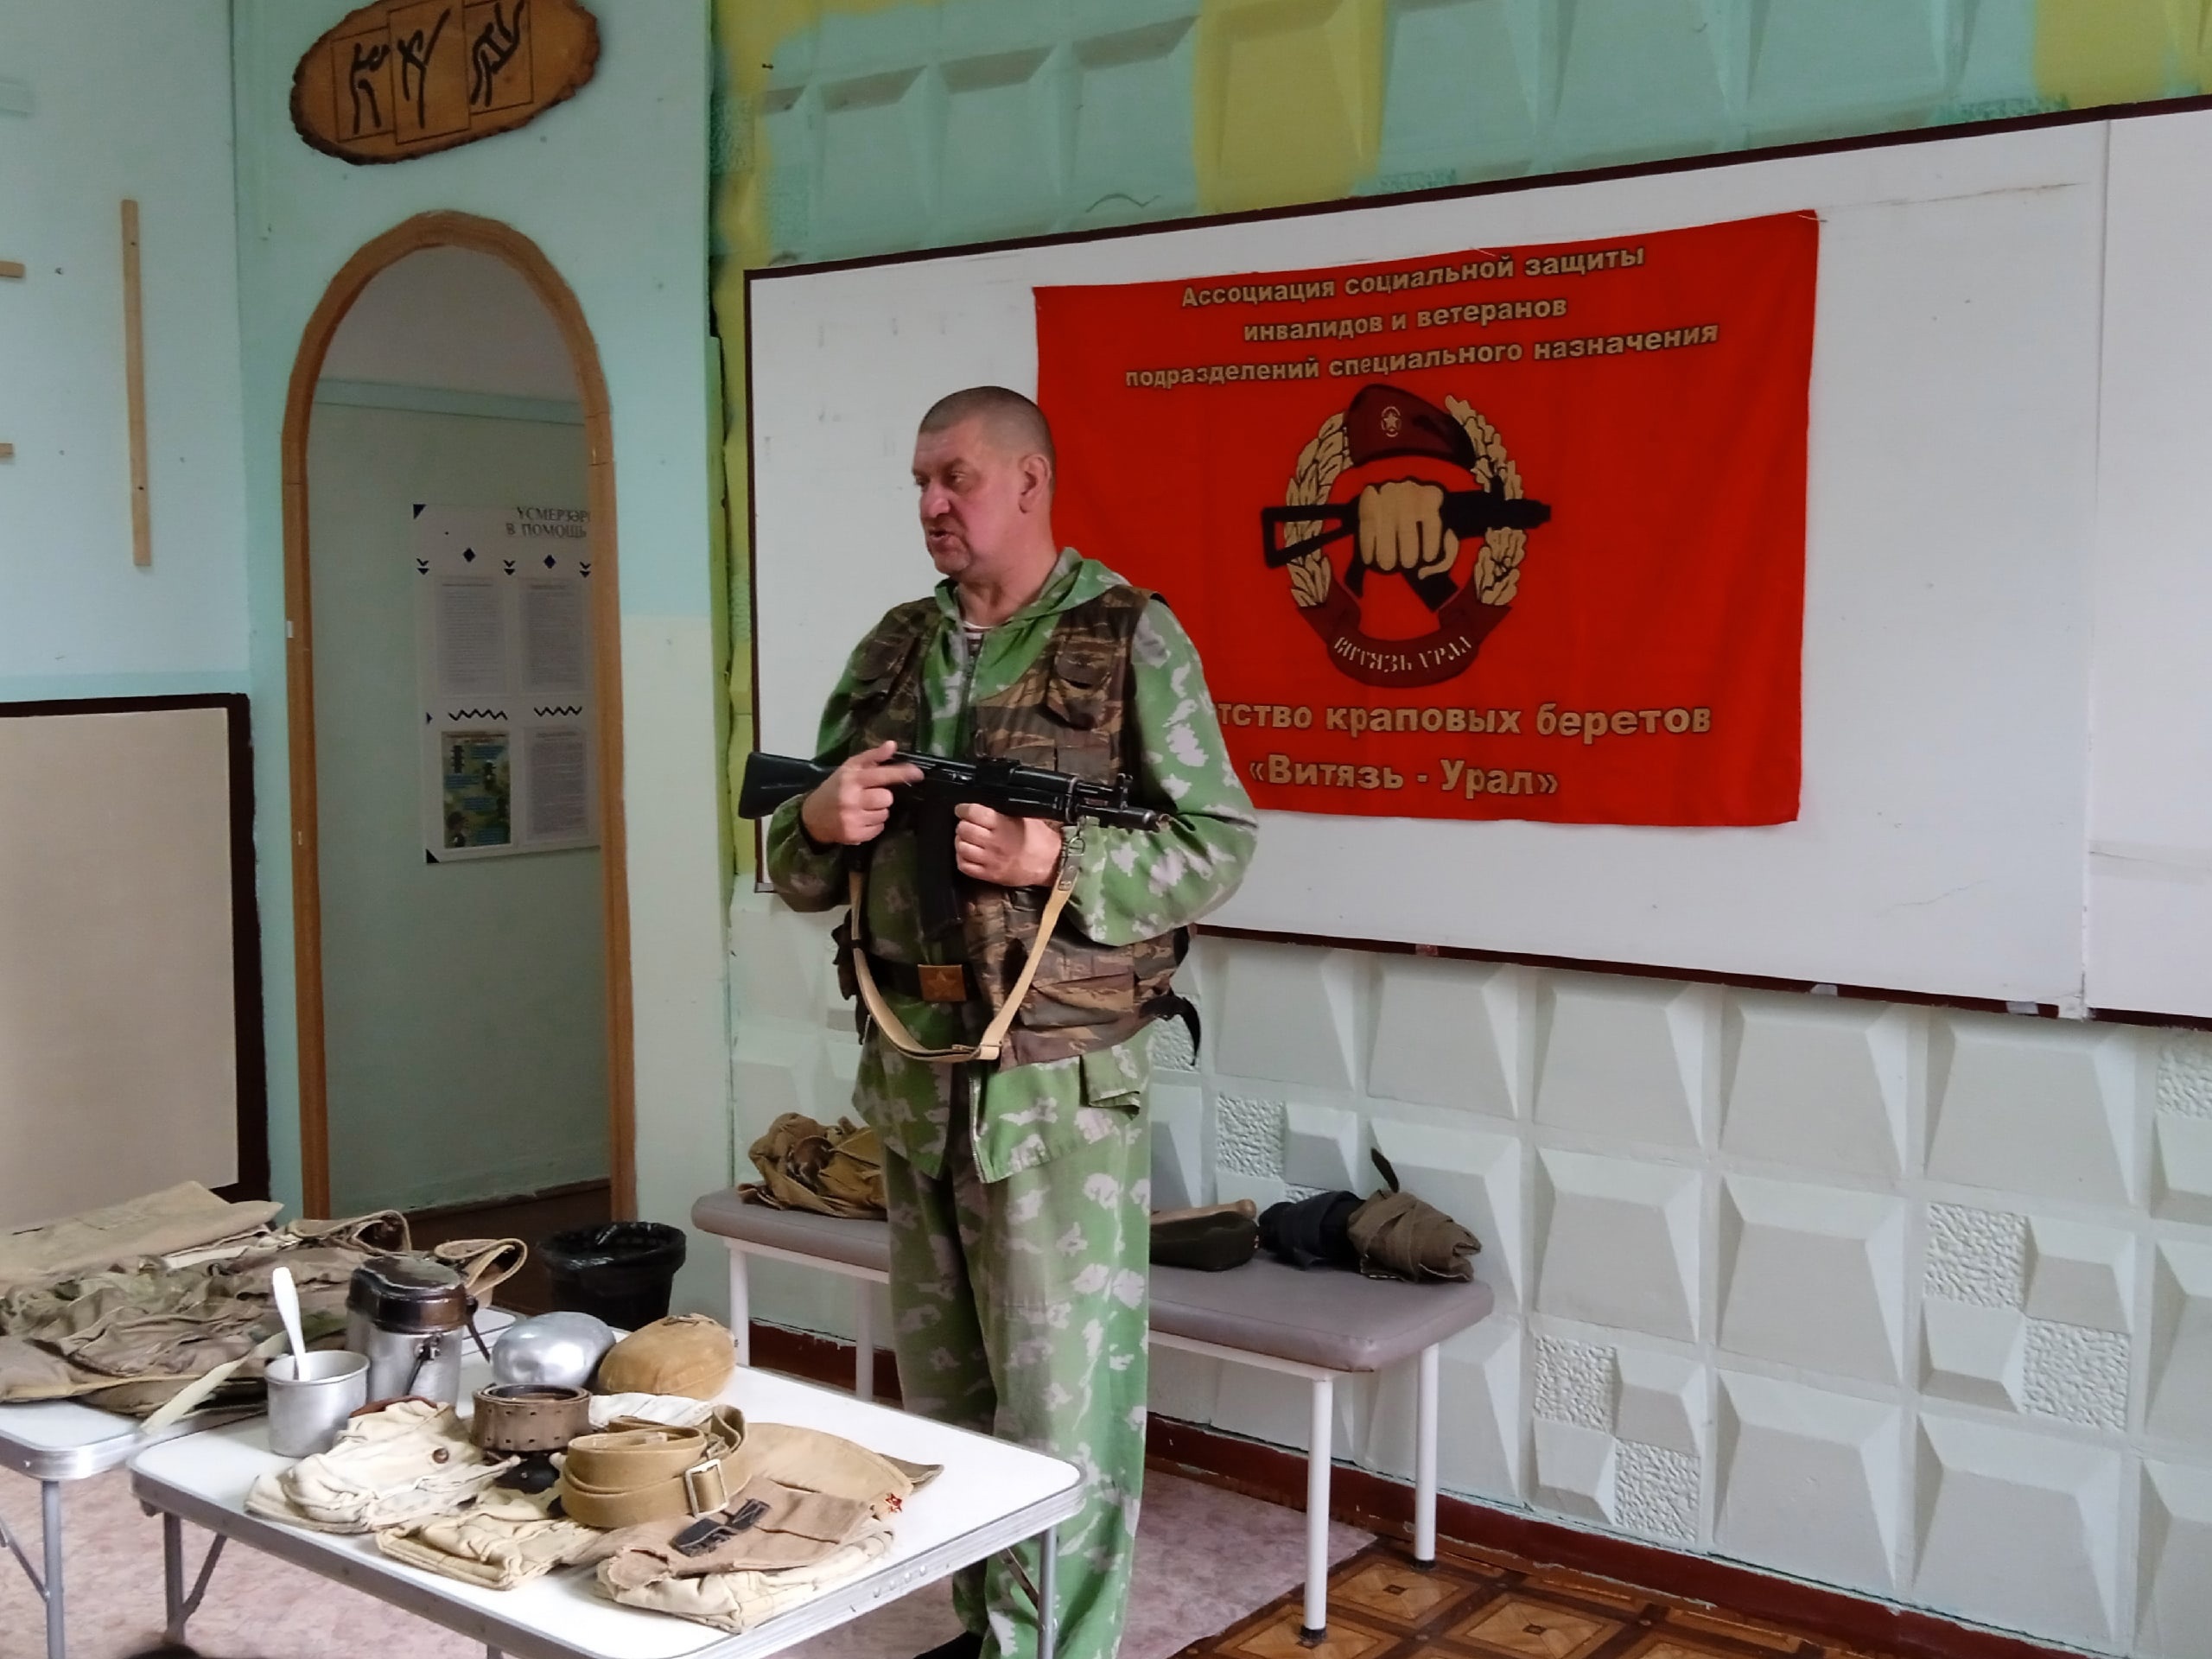 В подростковом клубе Рекорд  состоялась  выставка  вооружения Советской армии